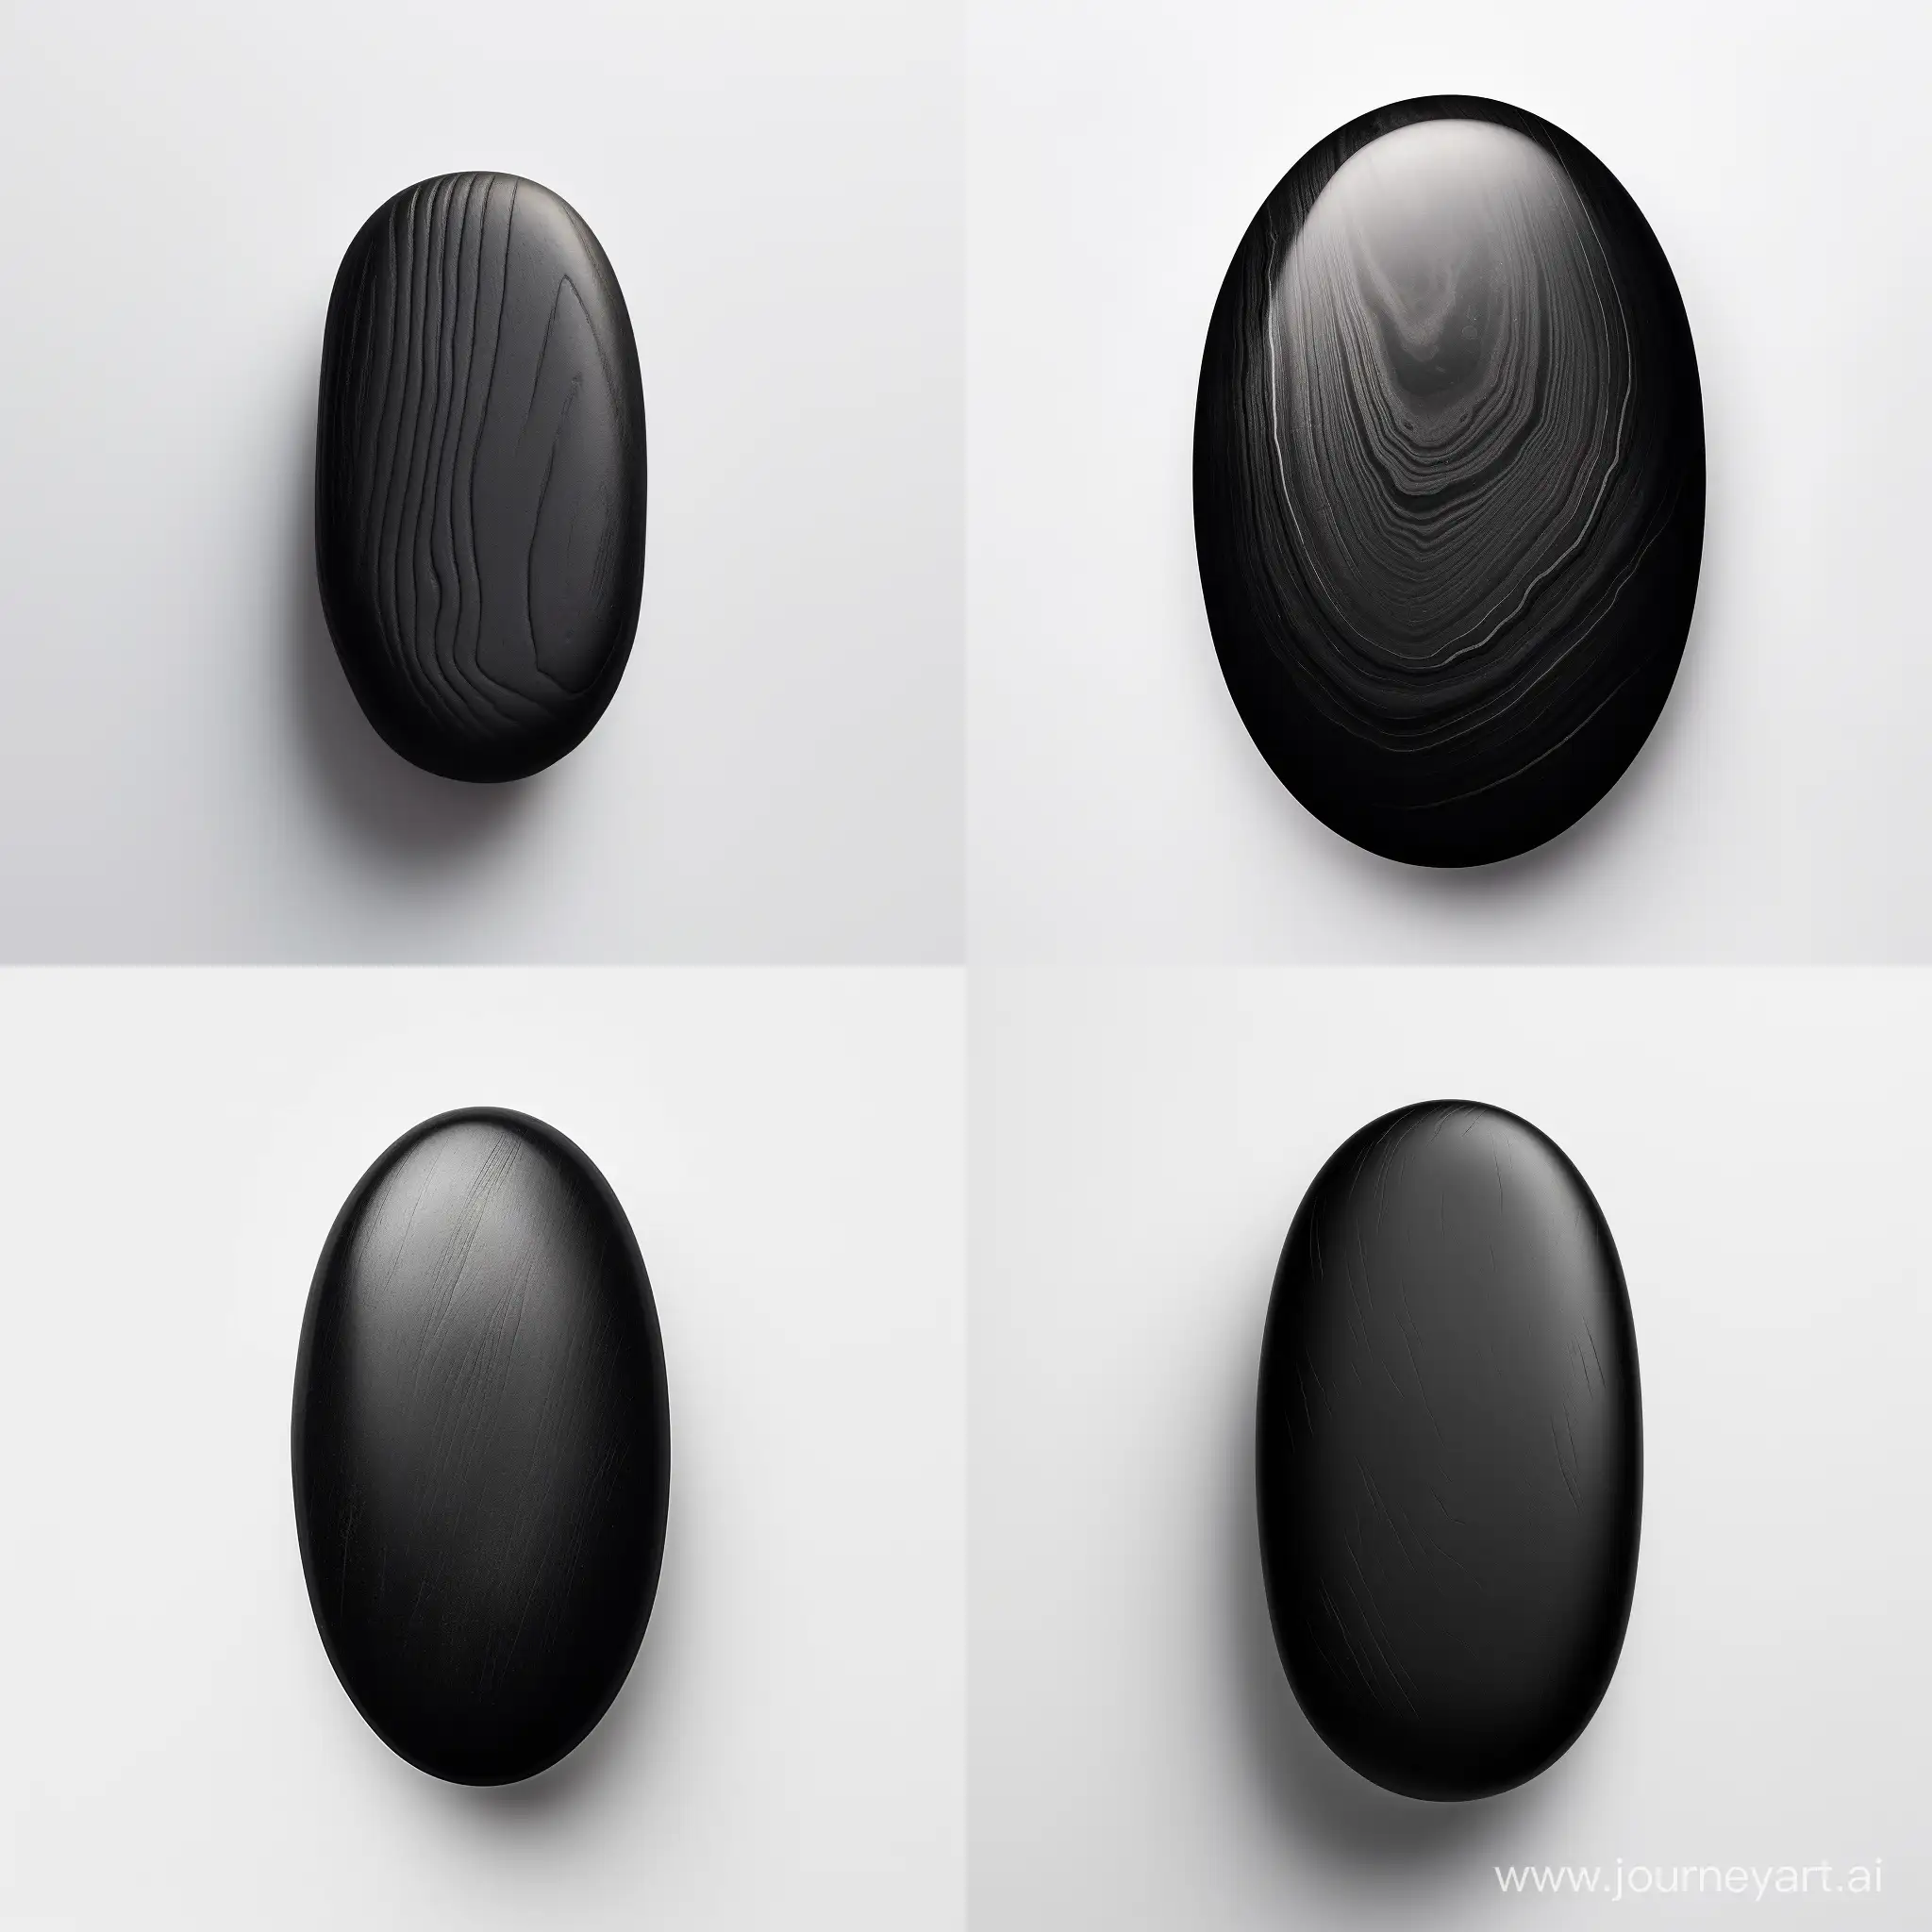 Elegant-Oval-Black-Stone-Cabochon-on-White-Background